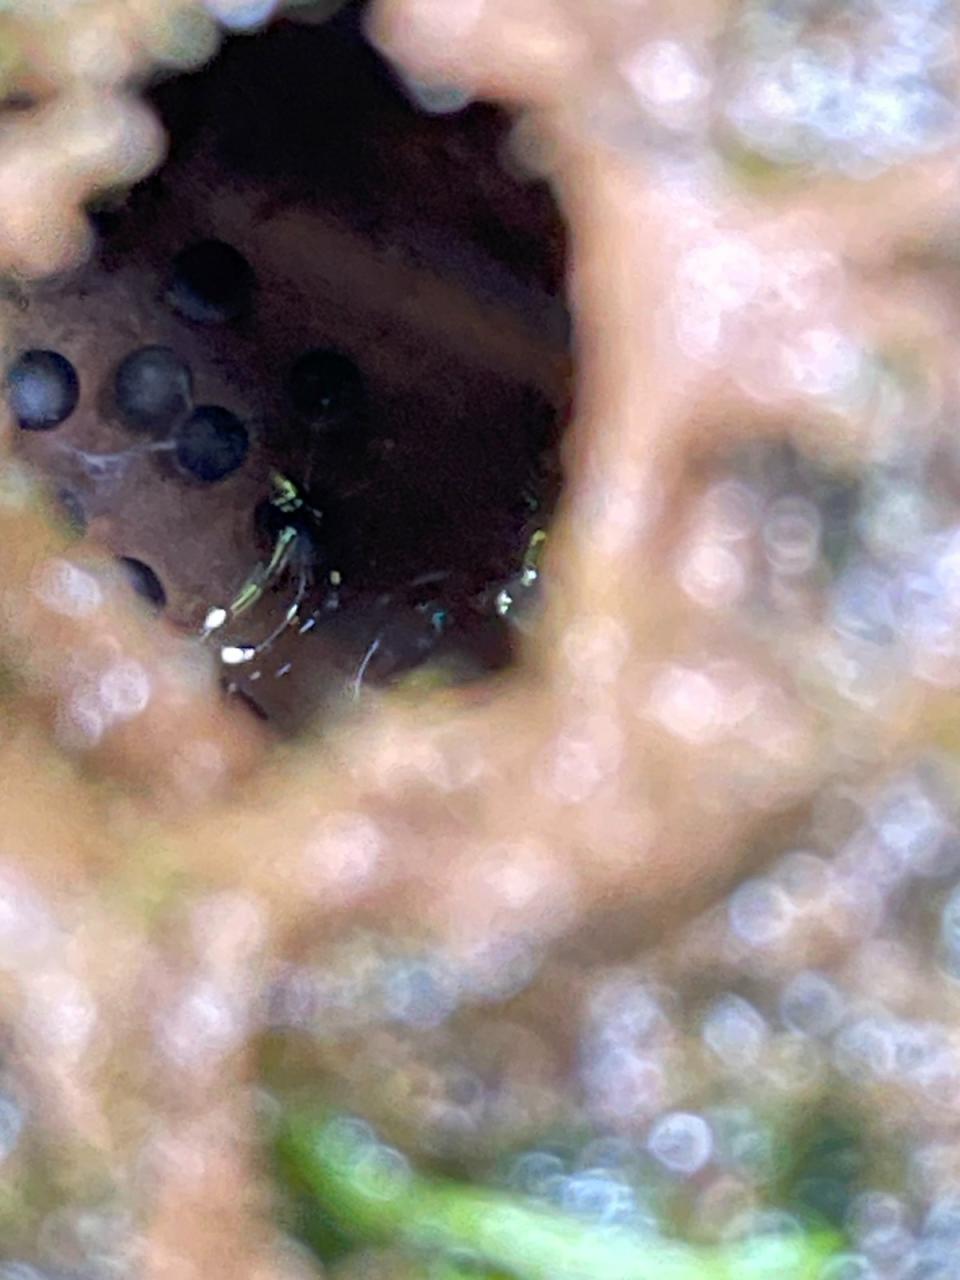 豎琴蛙泥窩中窺見的蛙卵。台北市立動物園提供